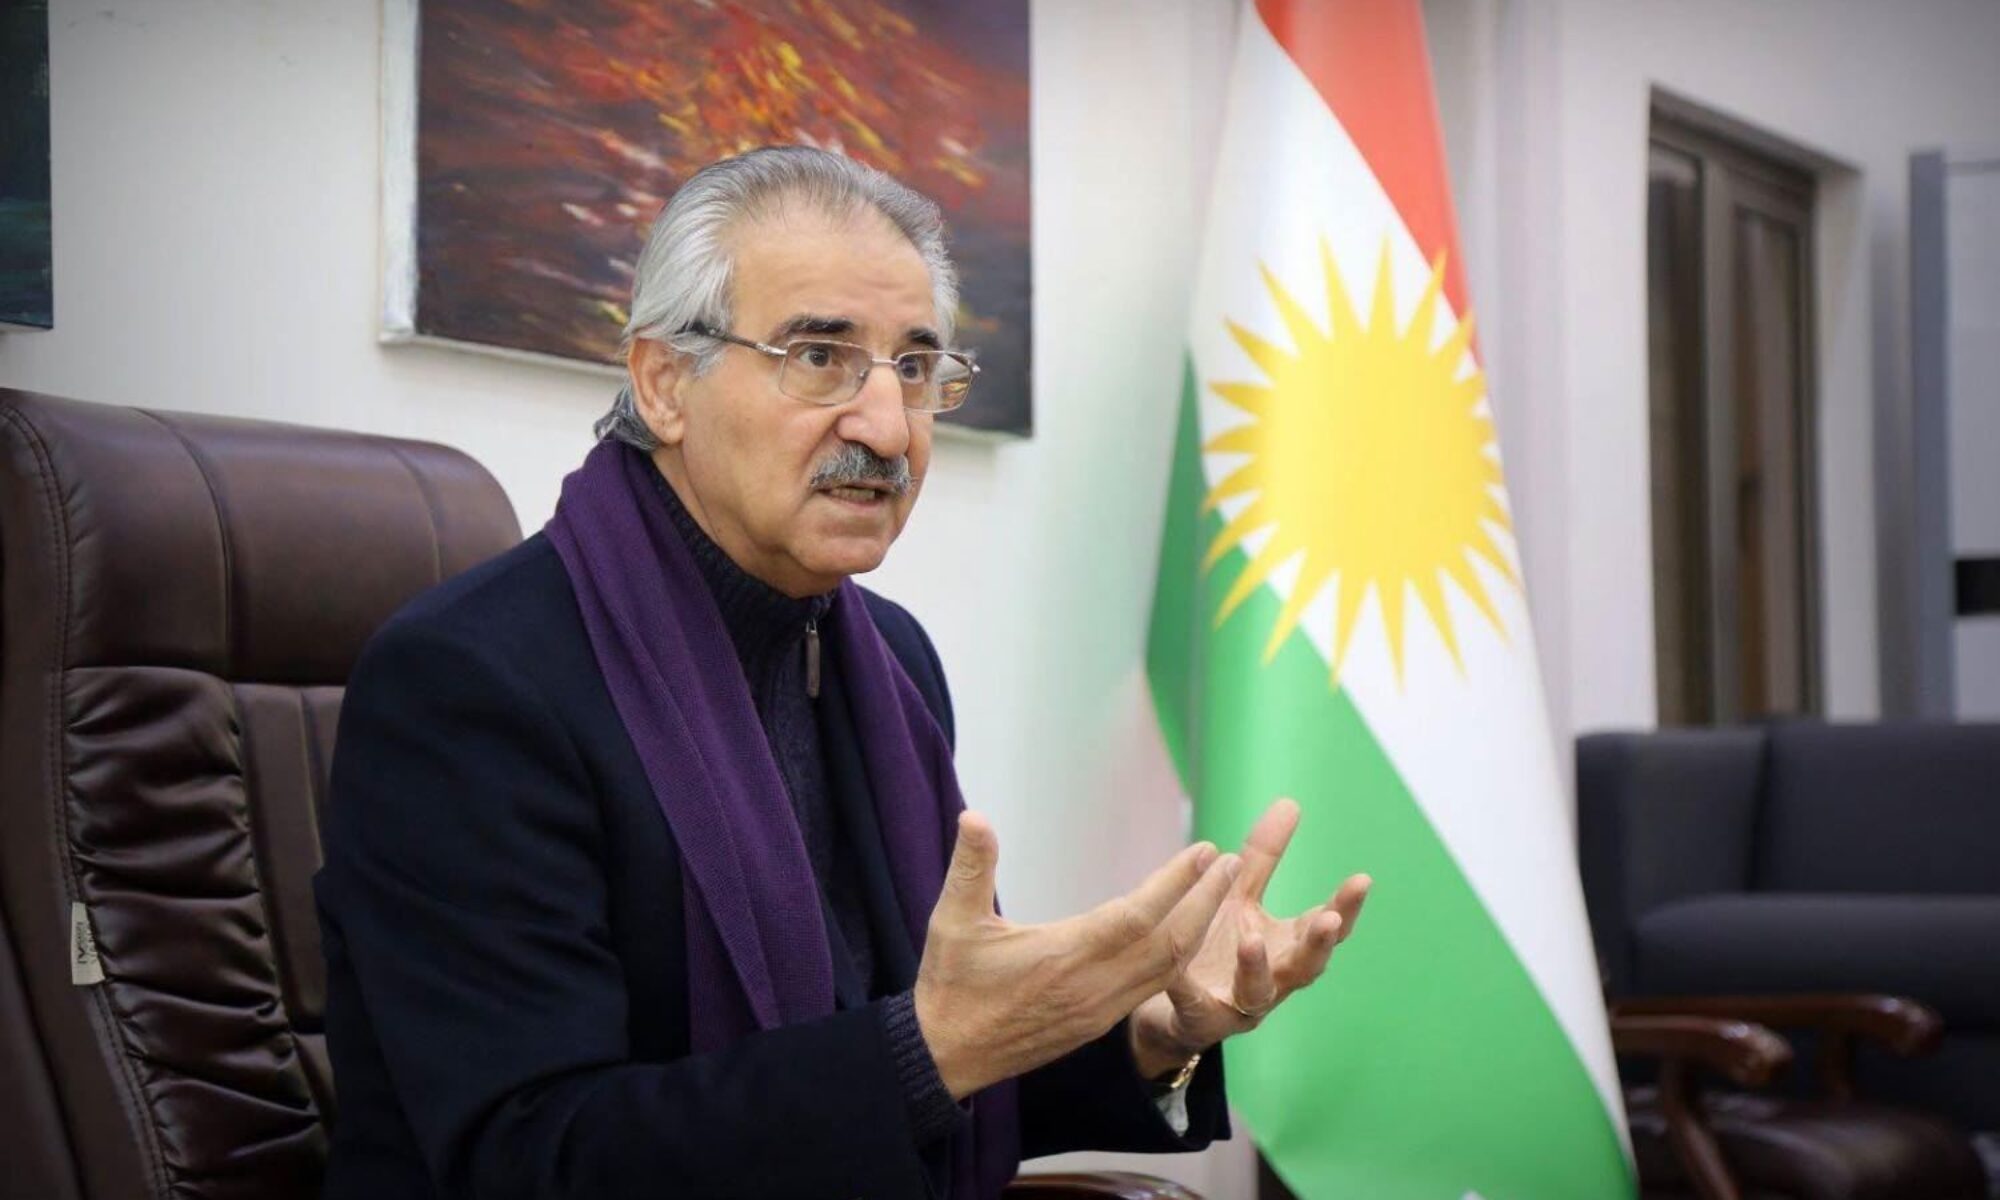 Deneyimli siyasetçi Mele Bahtiyar Irak mahkemesinin kararını değerlendirdi: “Kürdistan bölgesel bir planla karşı karşıya”